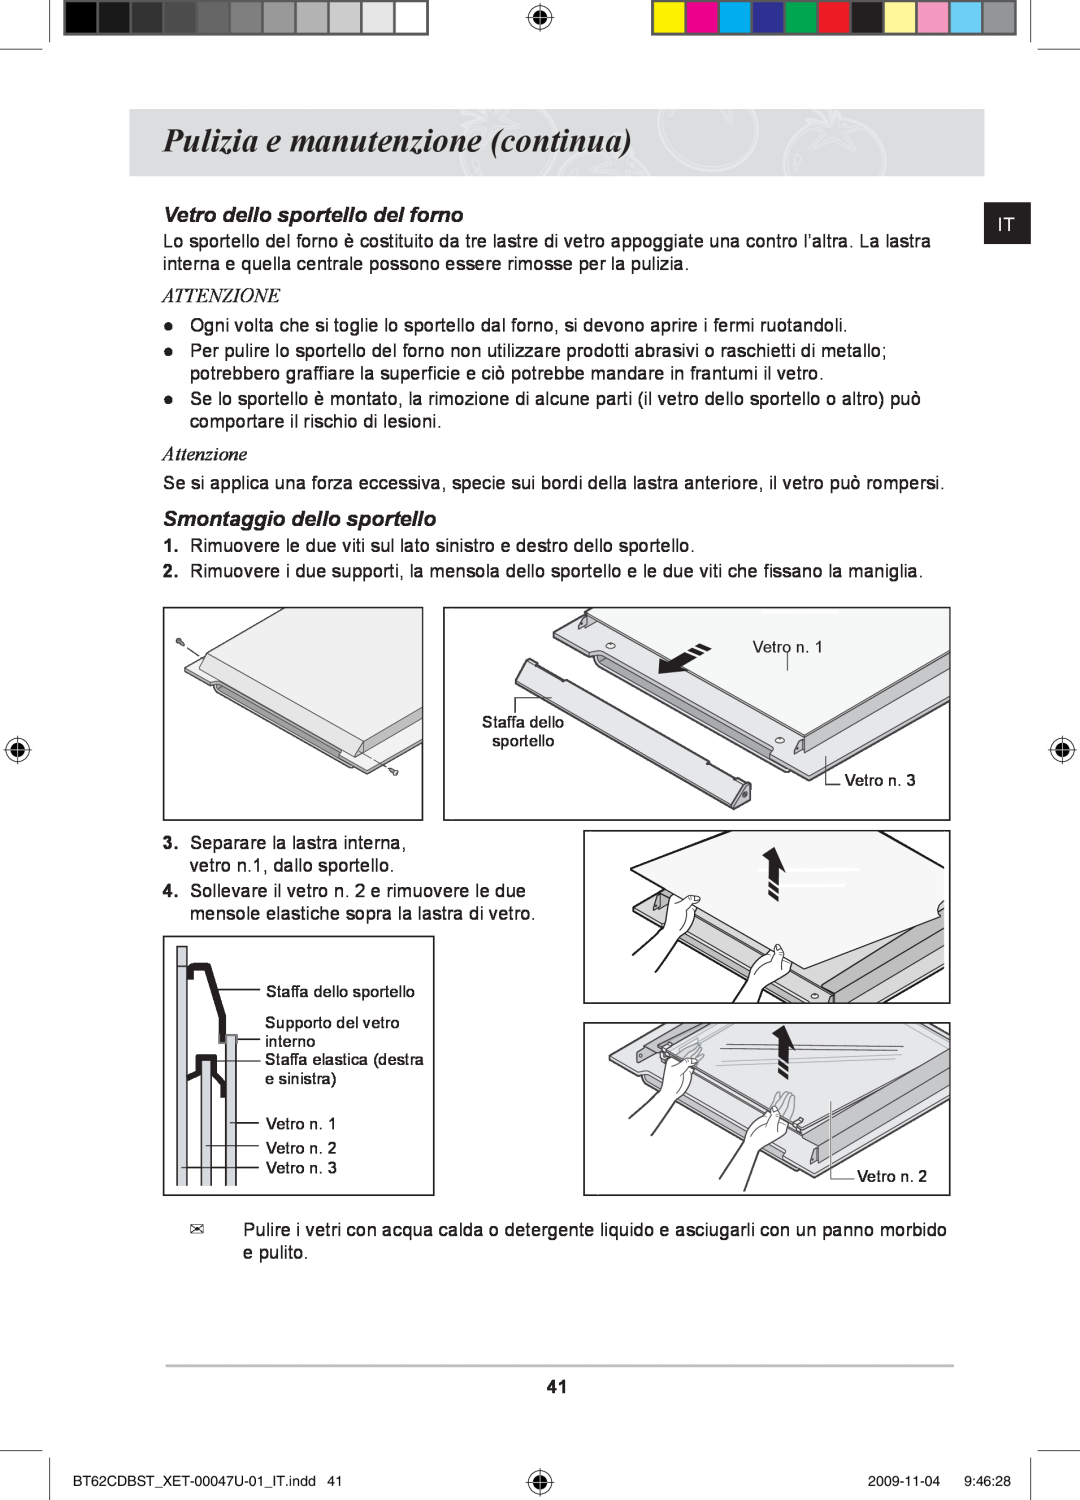 Samsung BT62CDBST/XET manual Vetro dello sportello del forno, Smontaggio dello sportello, Attenzione 